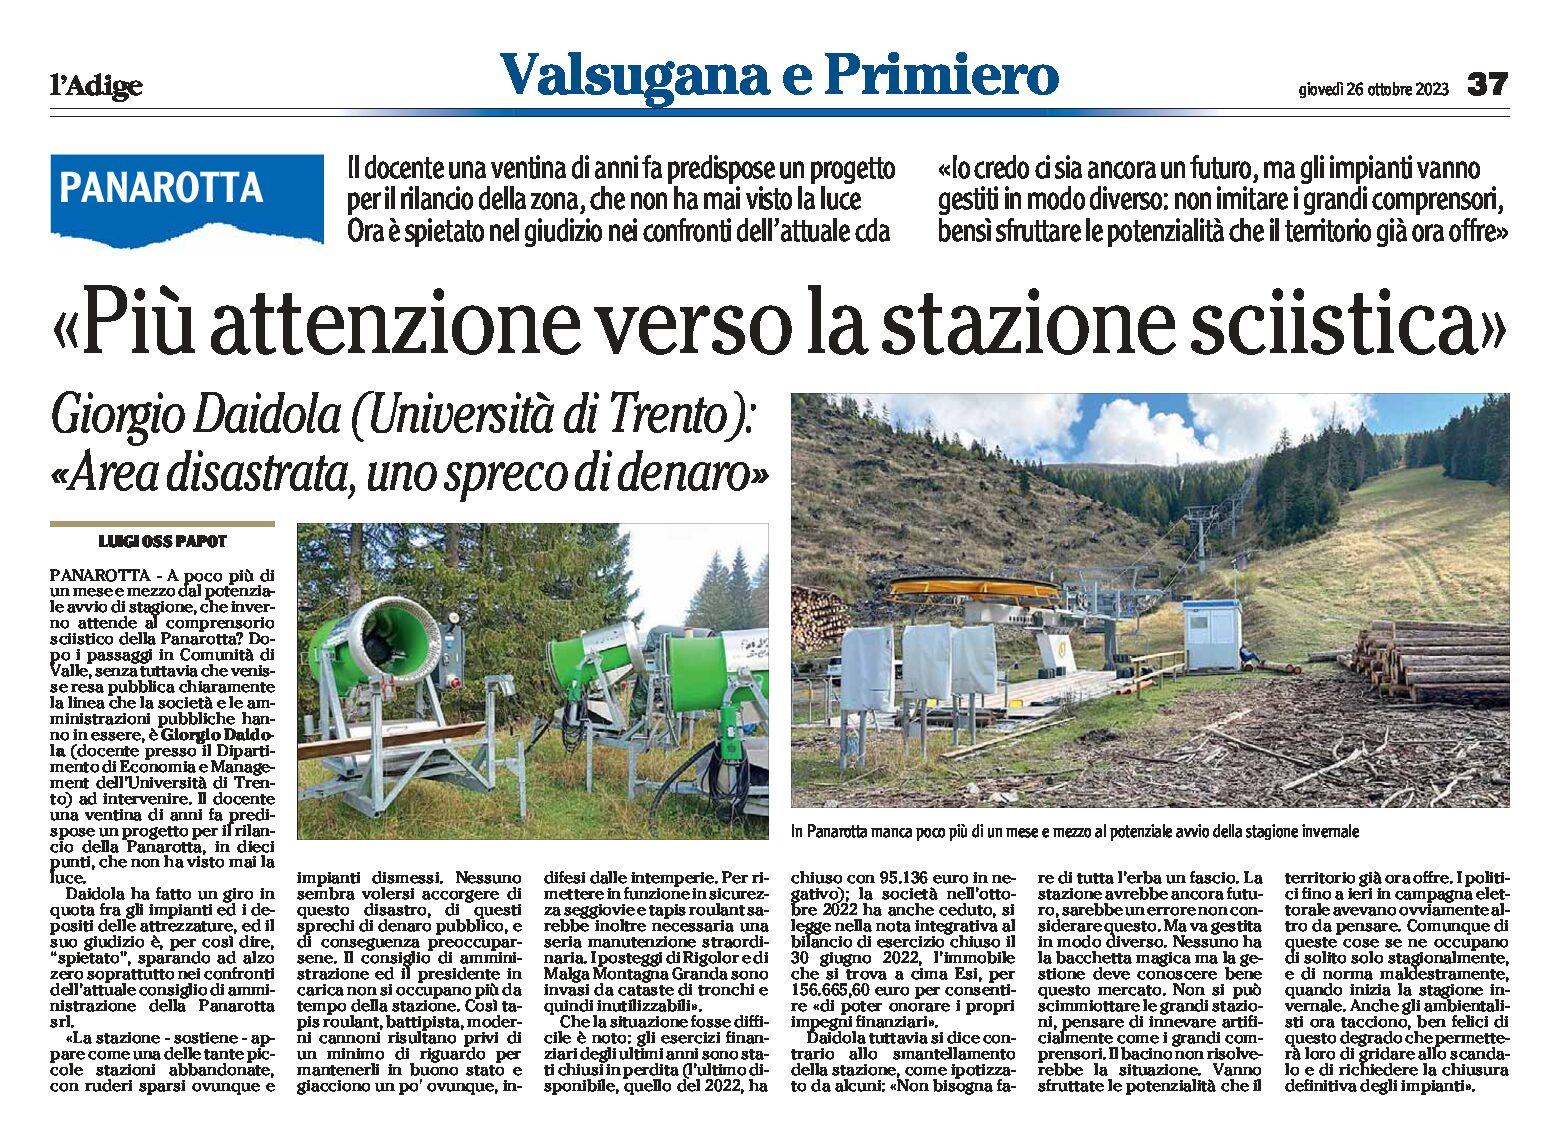 Panarotta: Daidola (Università di Trento) “più attenzione verso la stazione sciistica, area disastrata”